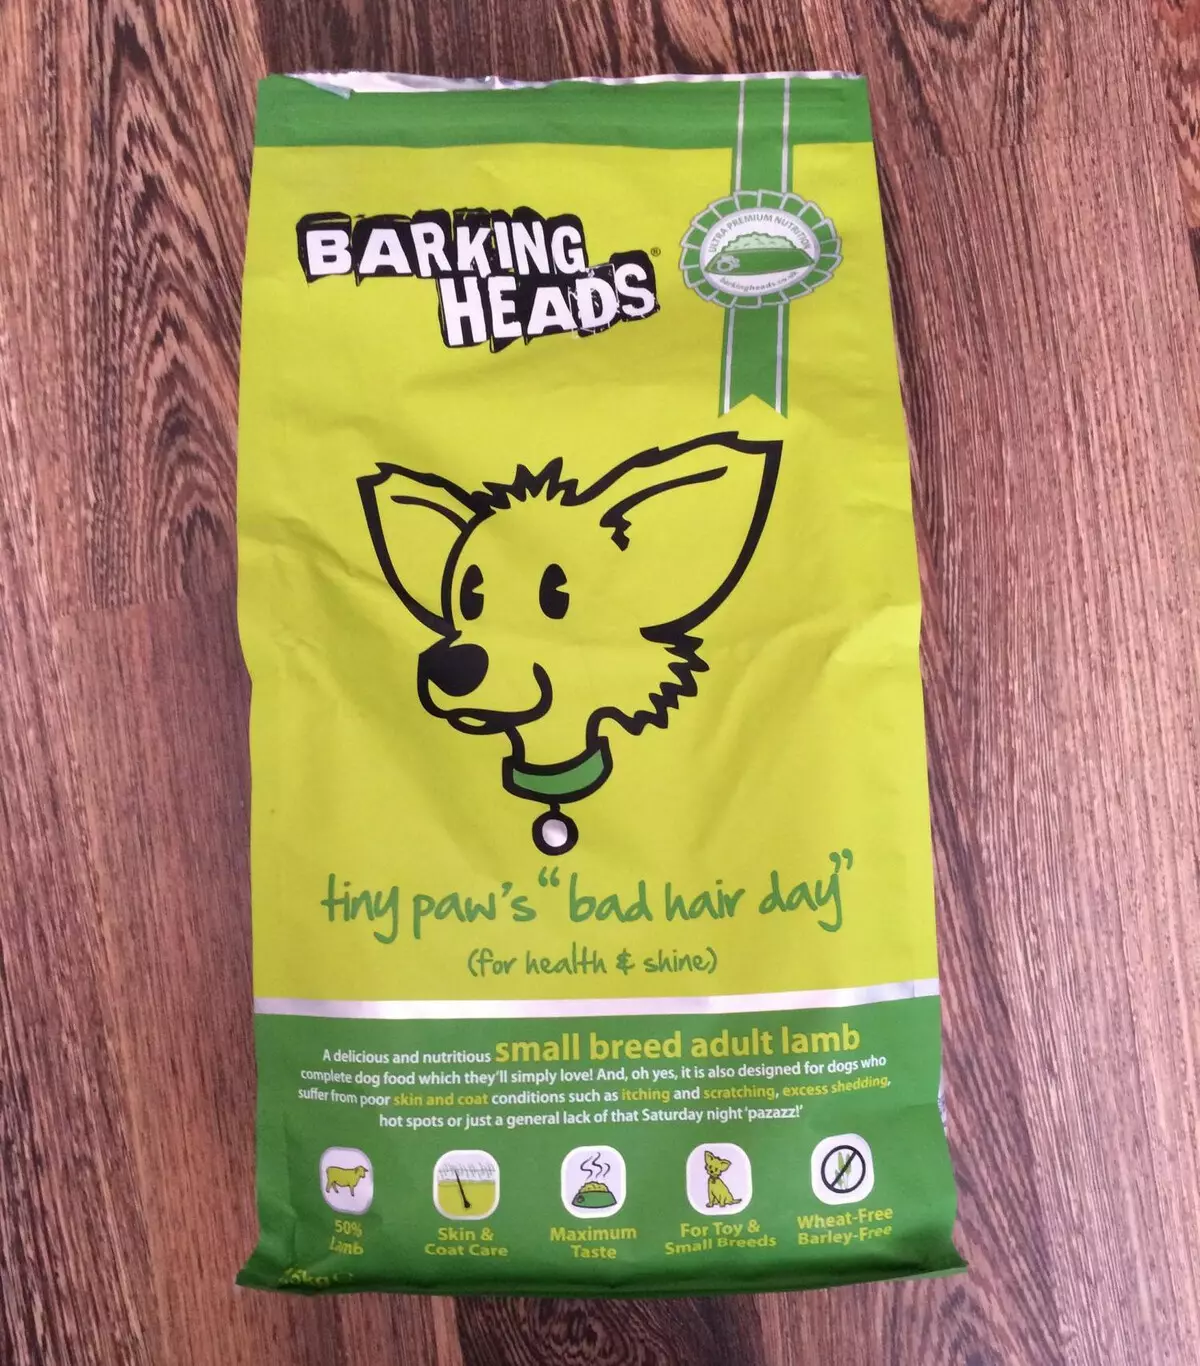 Feed Barking Heads: Kanggo kucing, kucing lan segawon. Feed Feed 